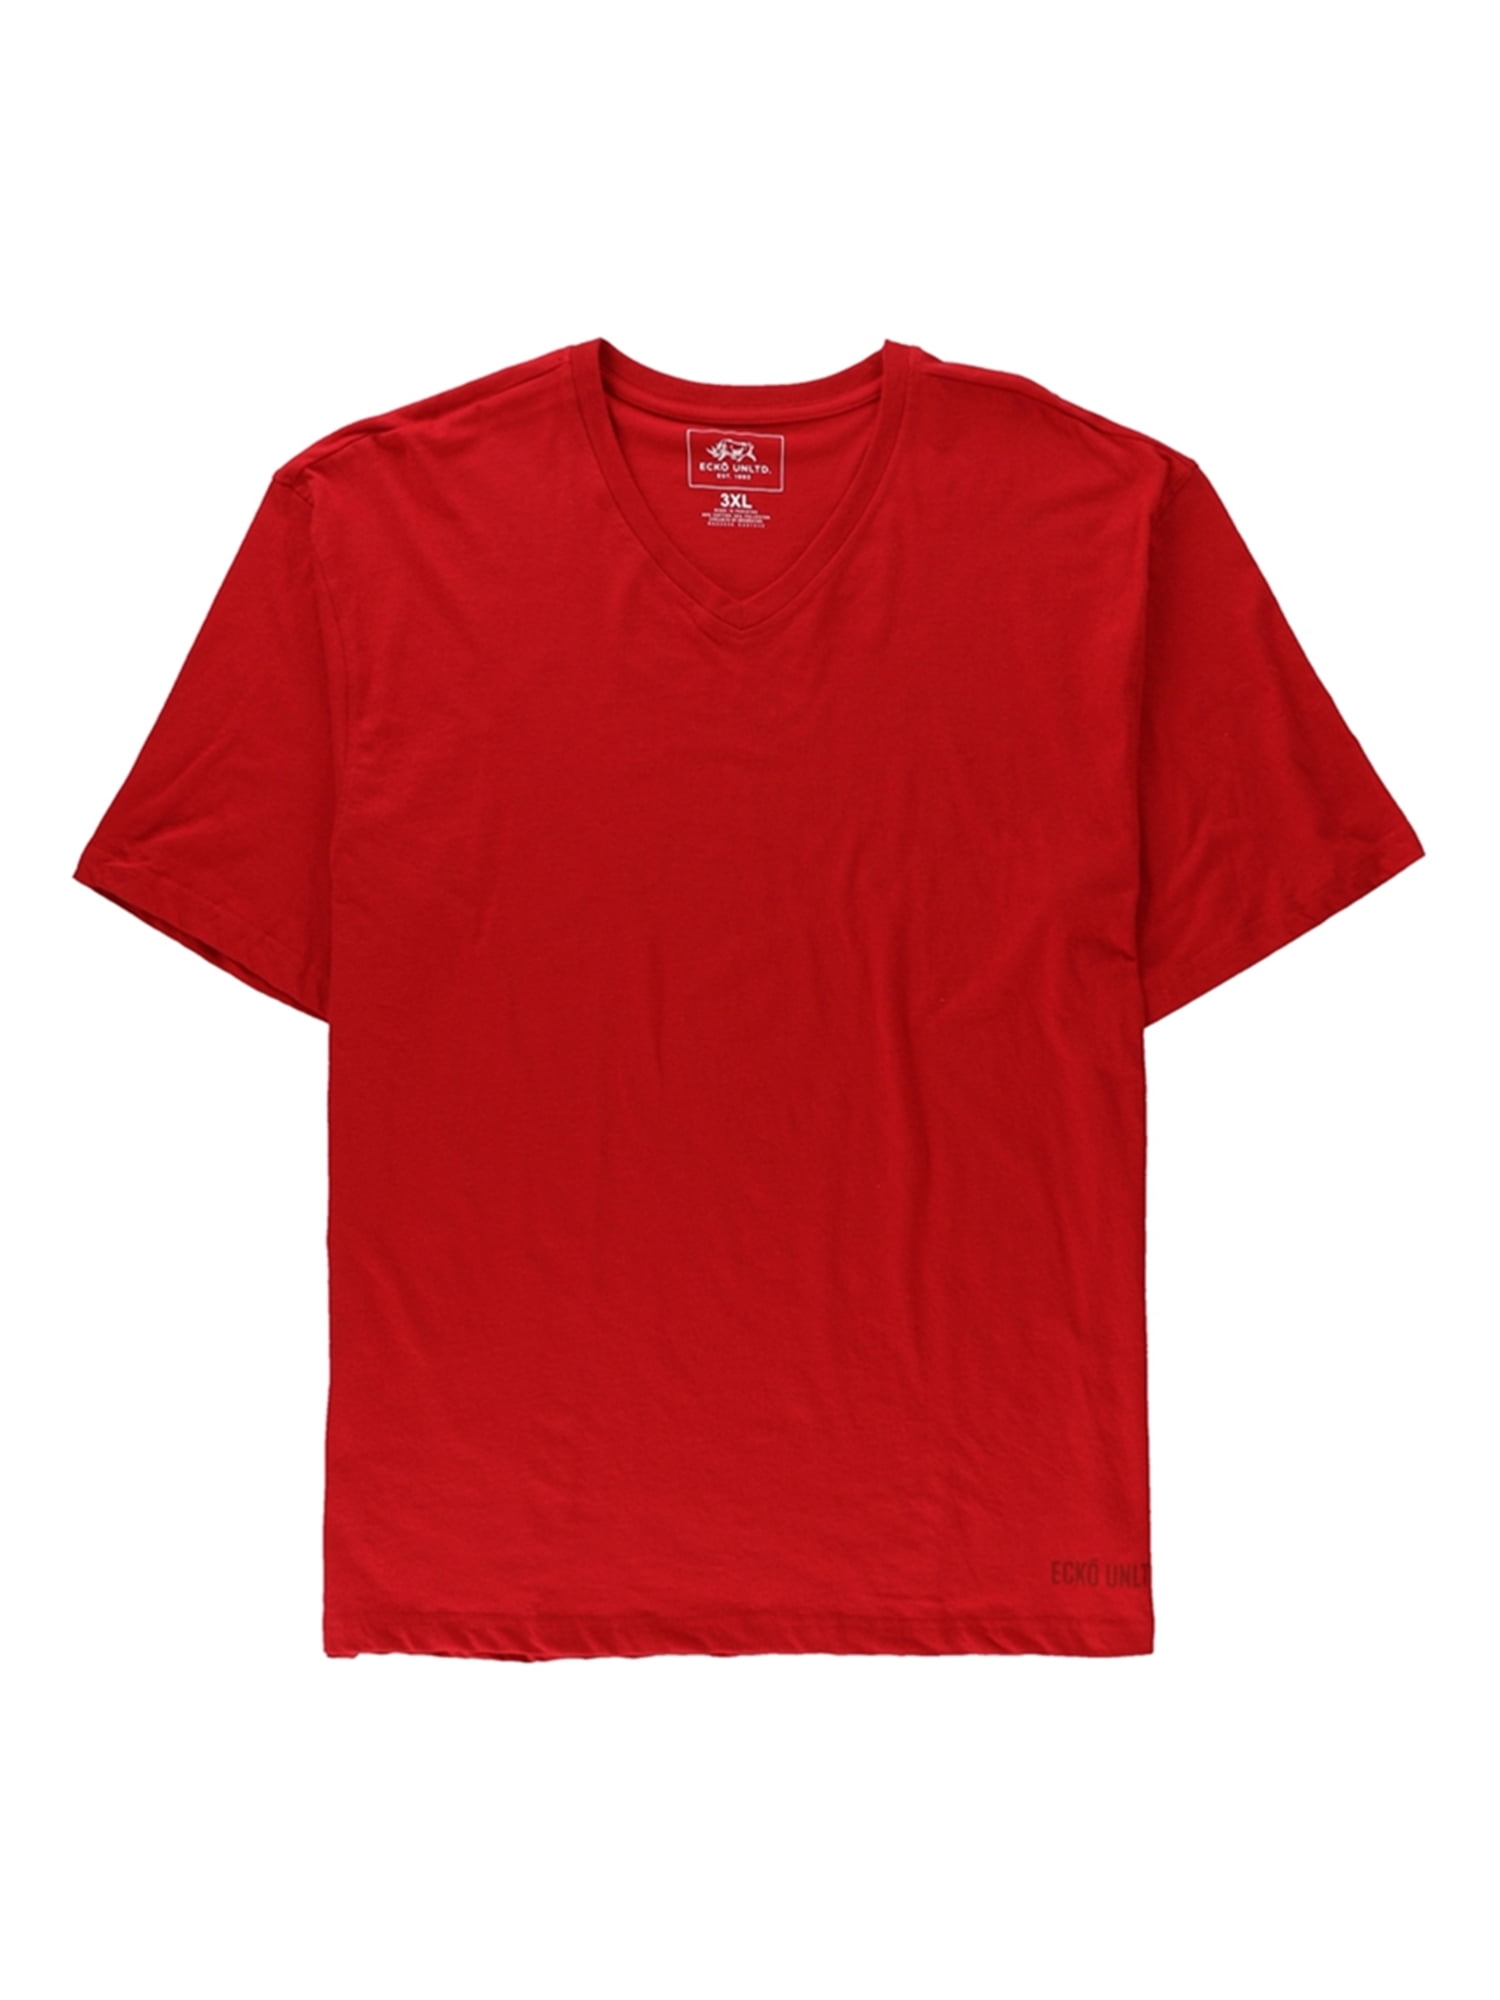 Ecko Unltd. Mens Solid V Neck Basic T-Shirt truekord 3XL | Walmart Canada